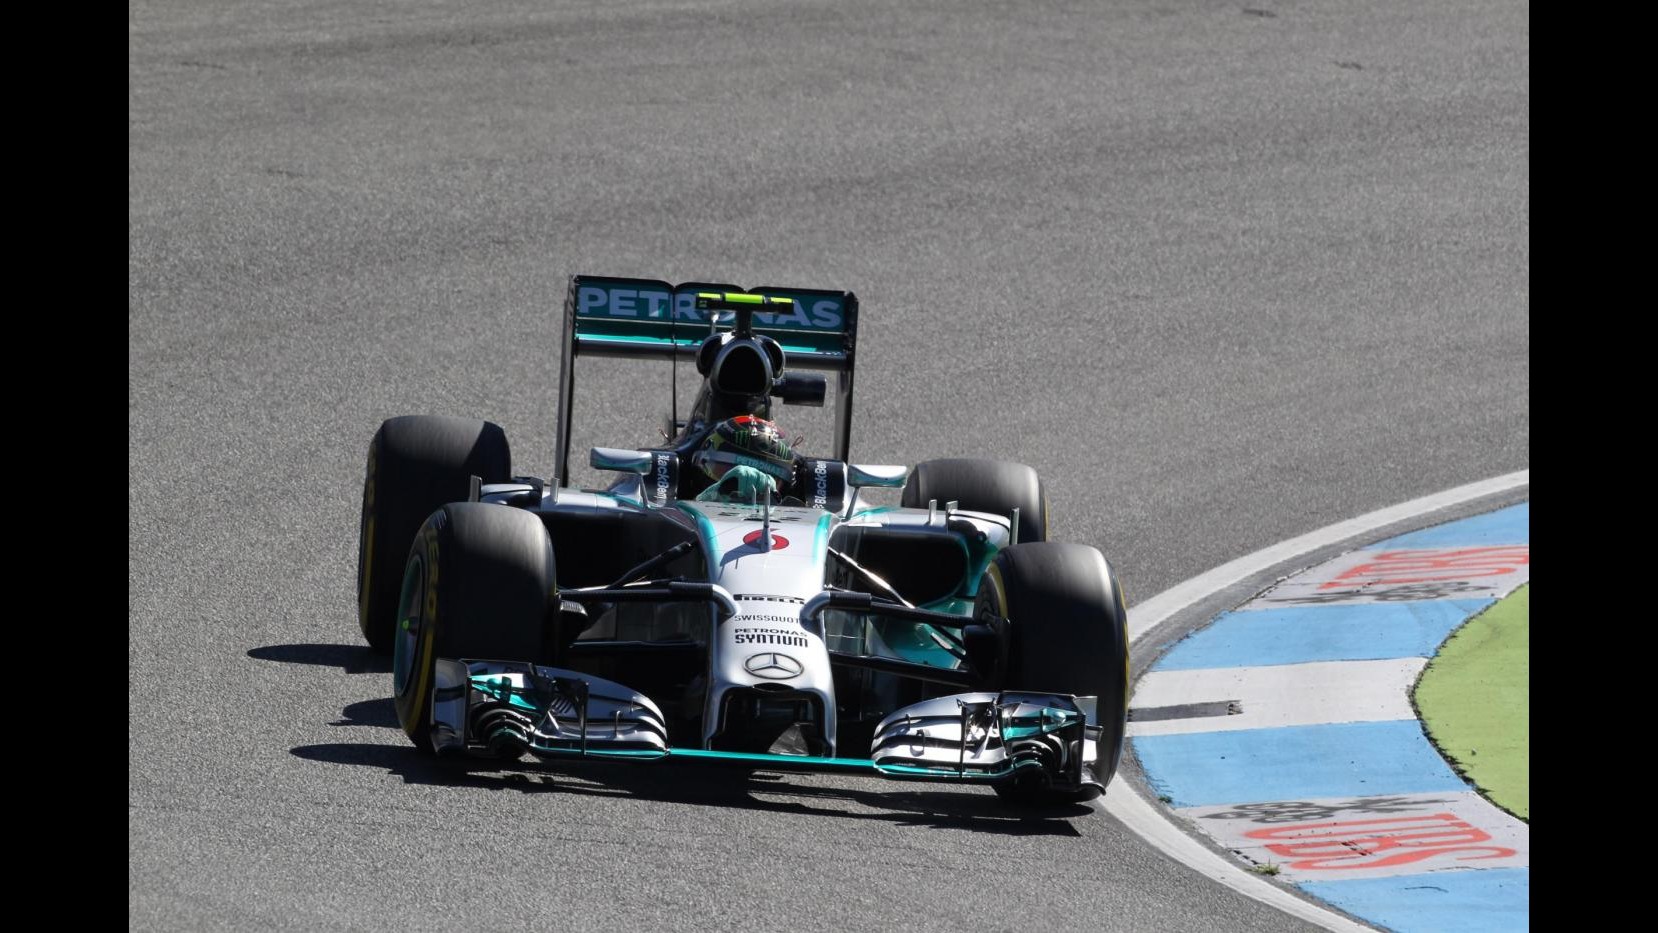 F1, Gp Gemania: Mercedes dominano prime libere davanti ad Alonso, Raikkonen 8°